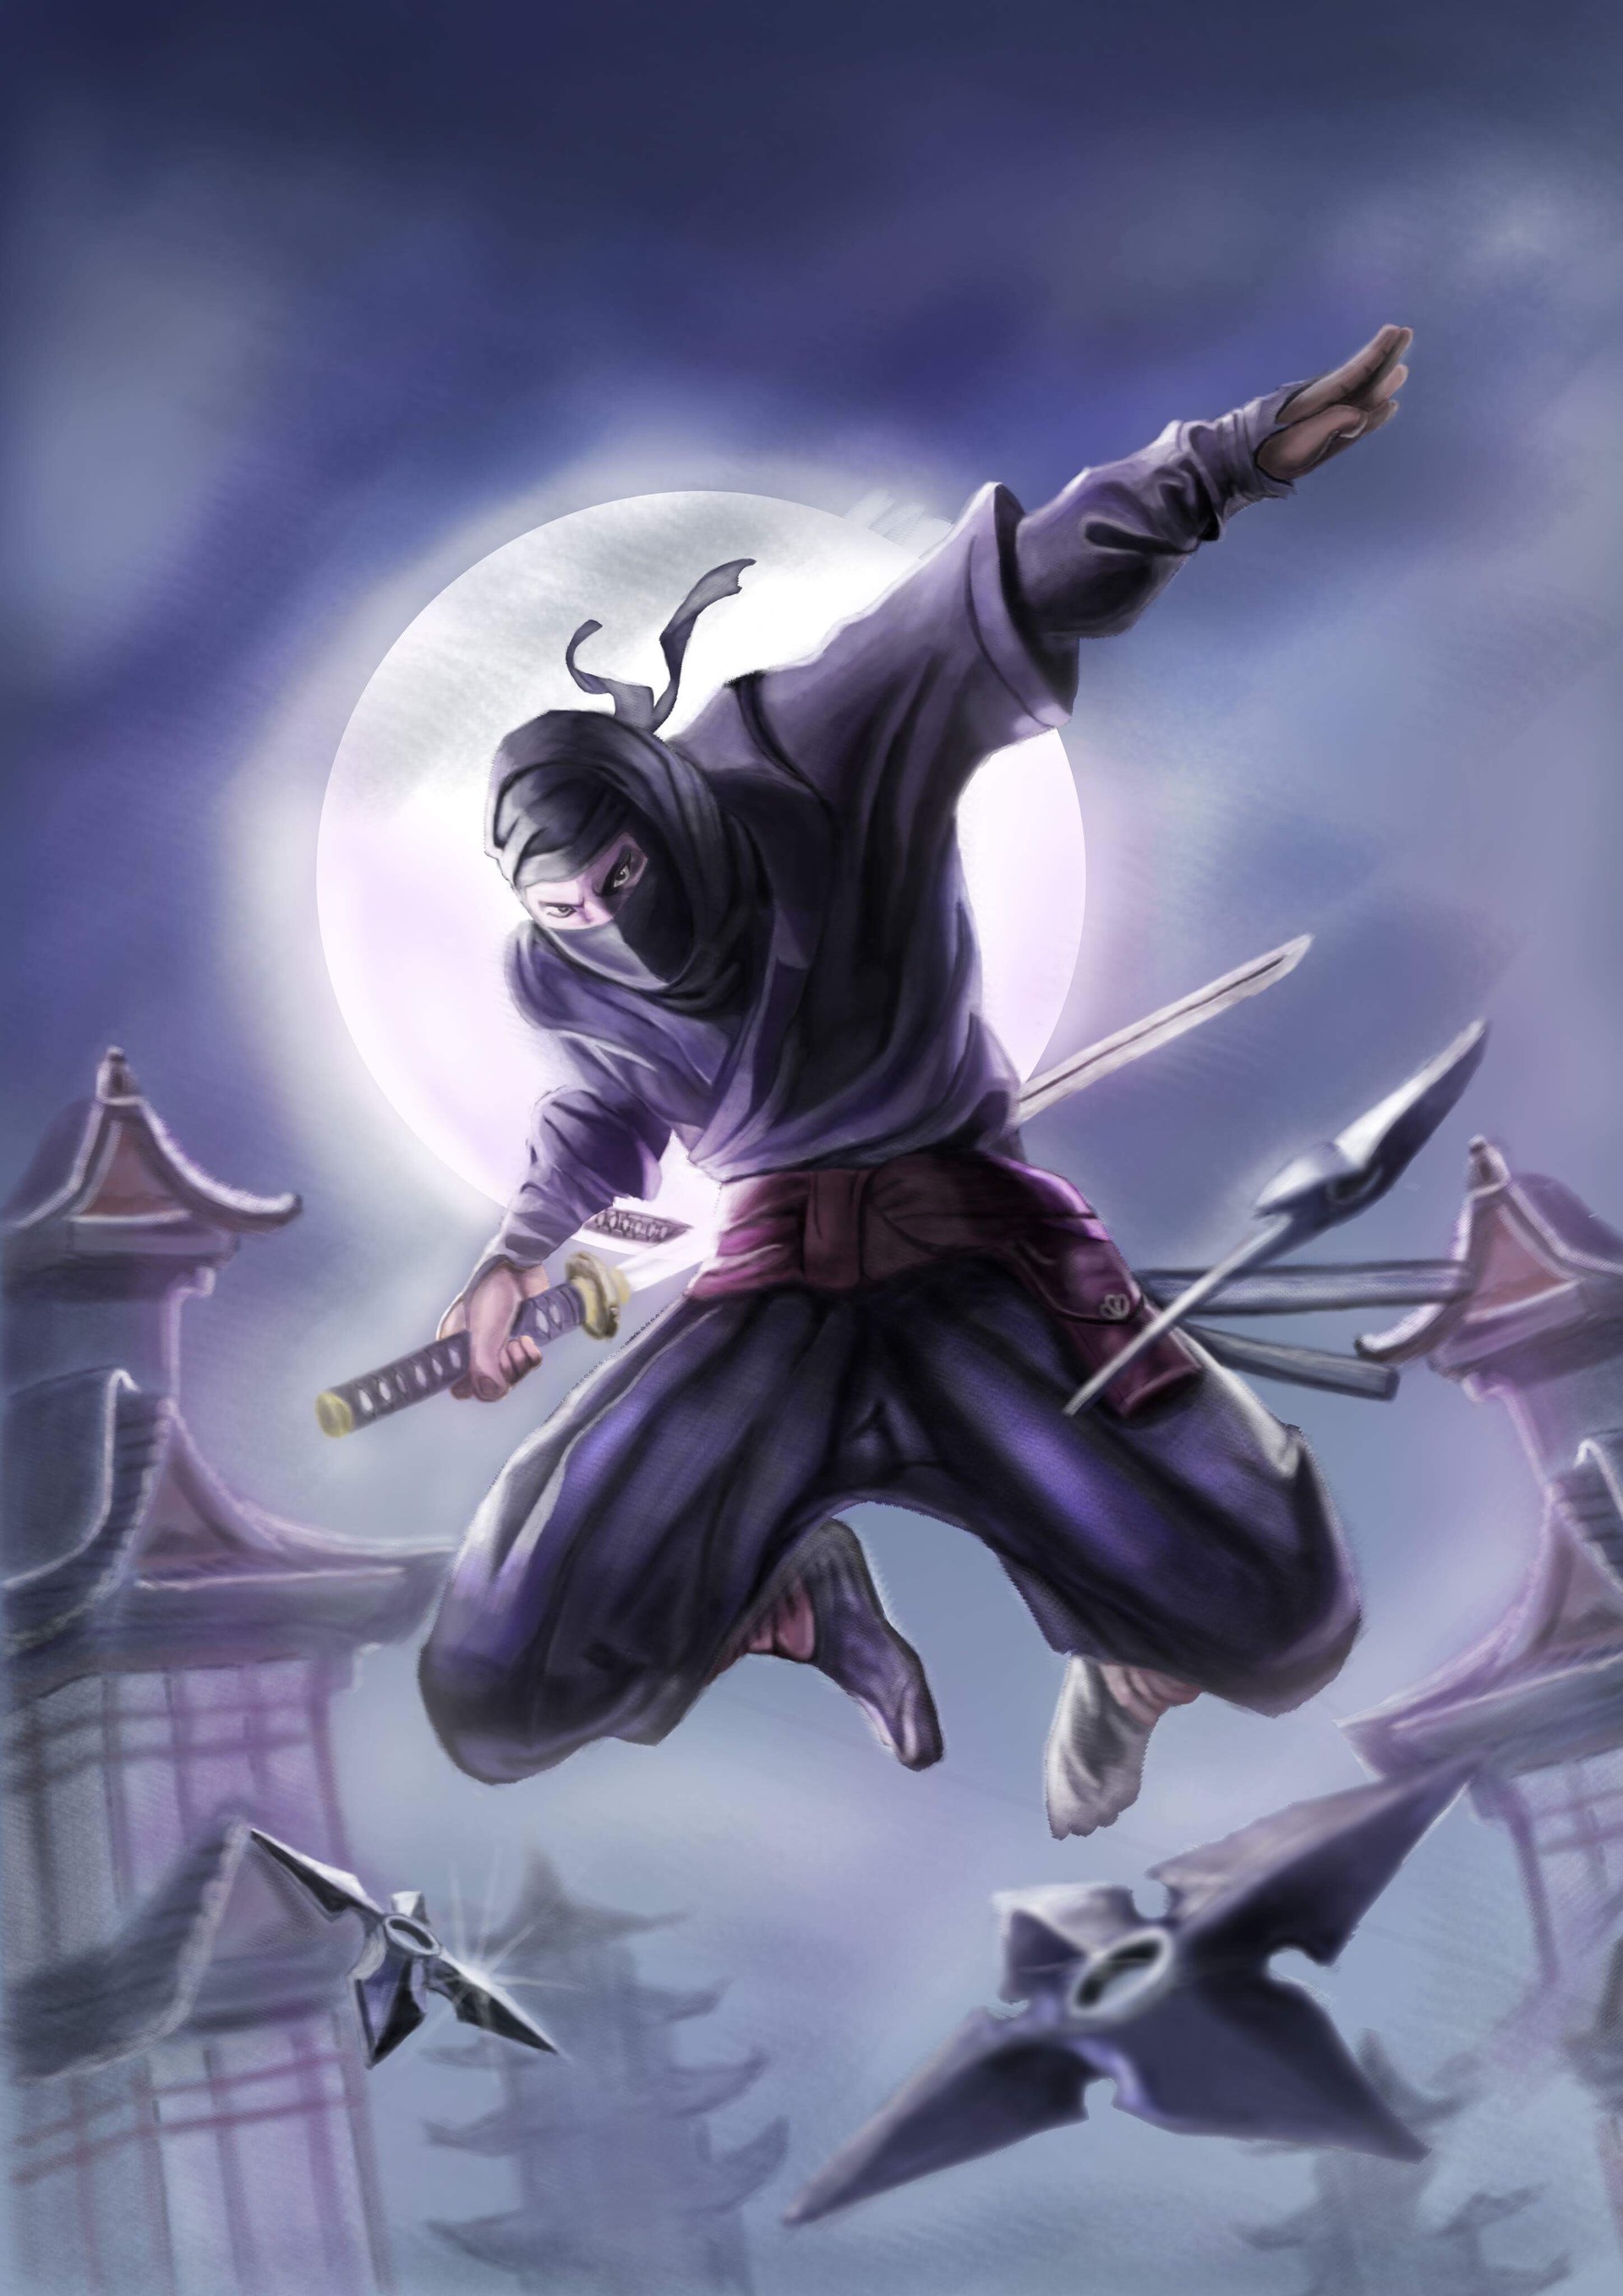 ArtStation - Ninja/japanese Culture, Saran Kulab